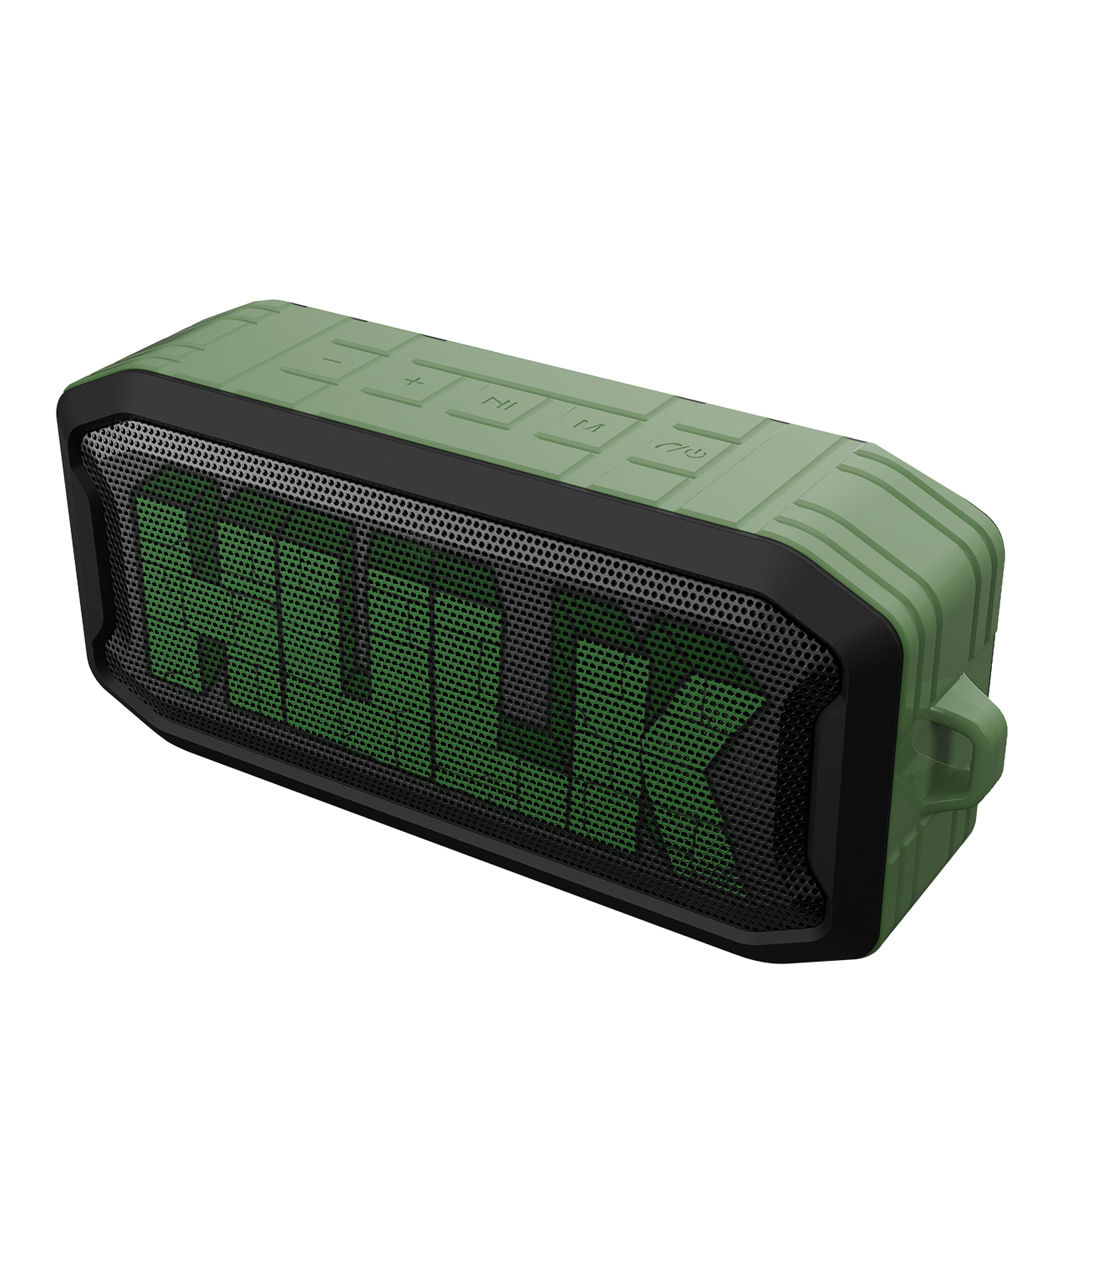 Buy Strong As Hulk - Macmerise Nuke Bluetooth Speaker Speakers Online